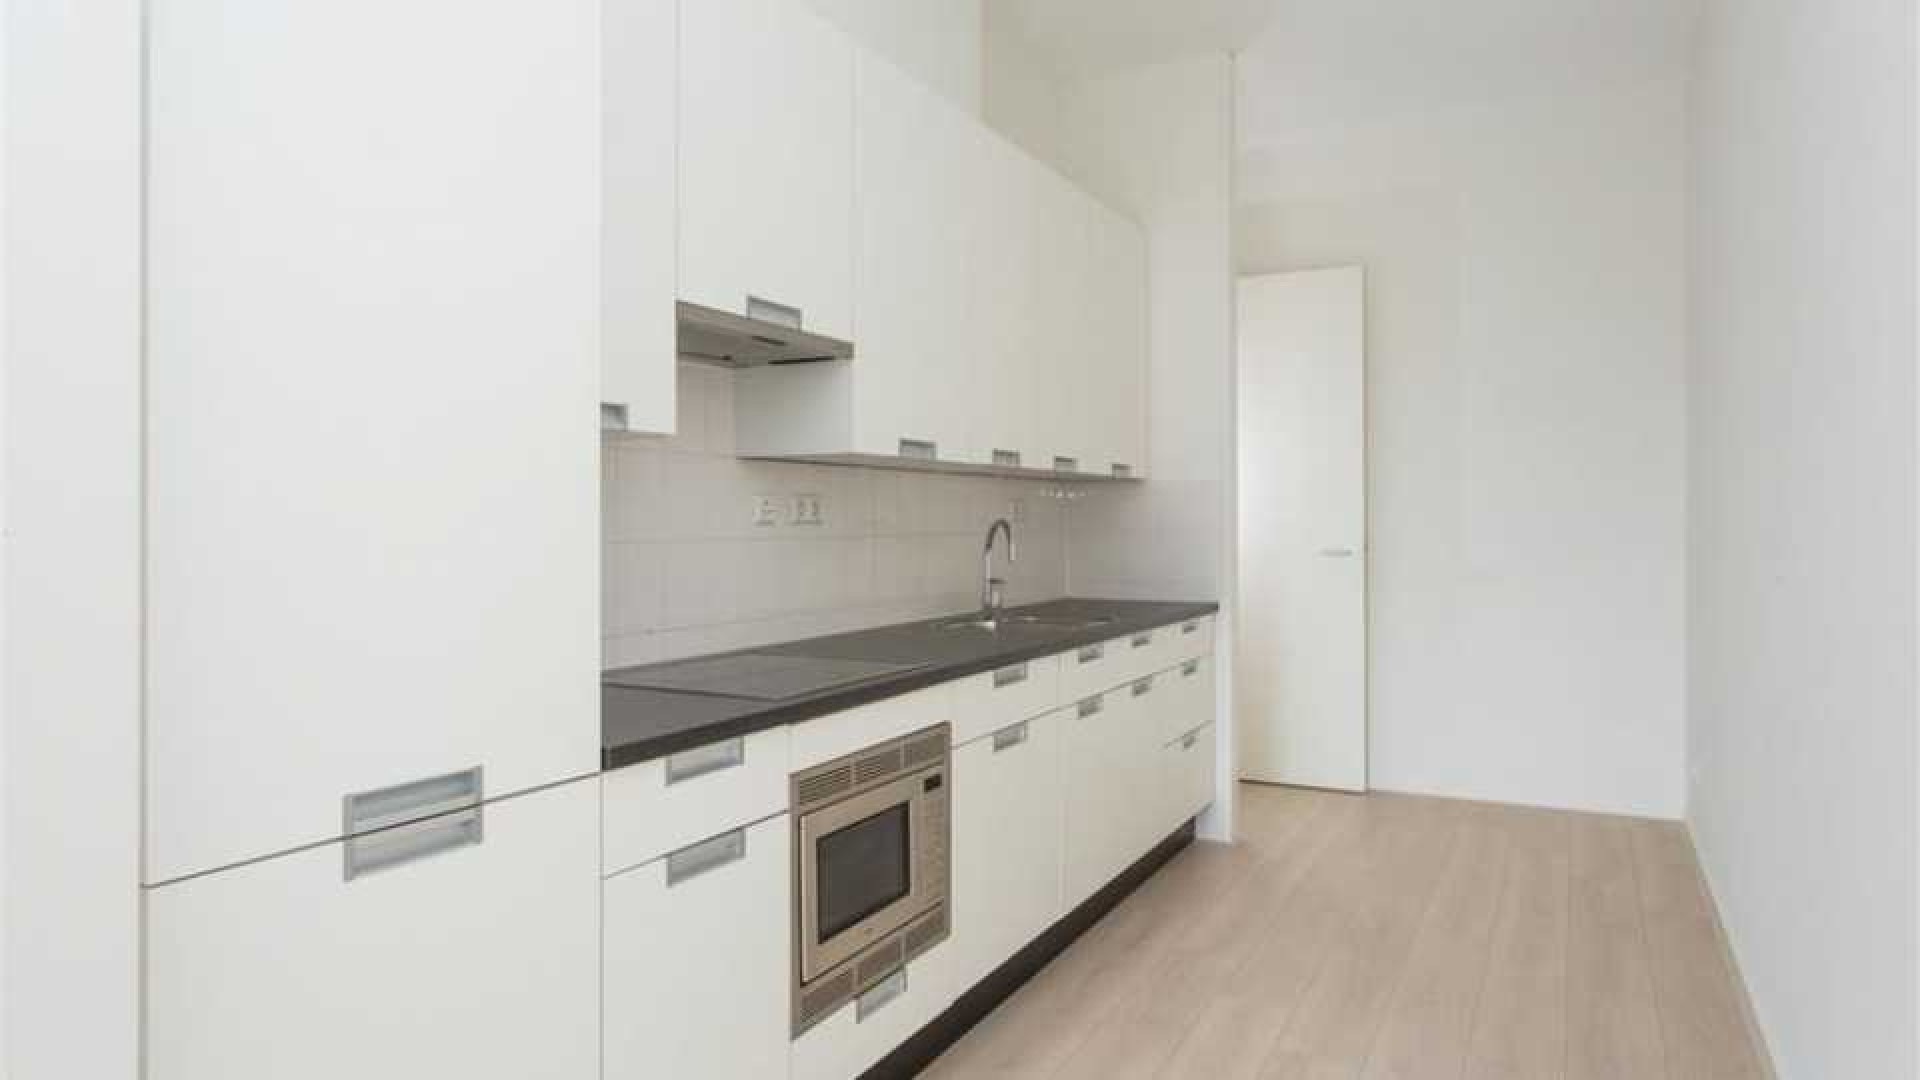 Ajax voetballer Joel Veltman huurt zeer luxe appartement aan de Zuid As in Amsterdam. Zie foto's